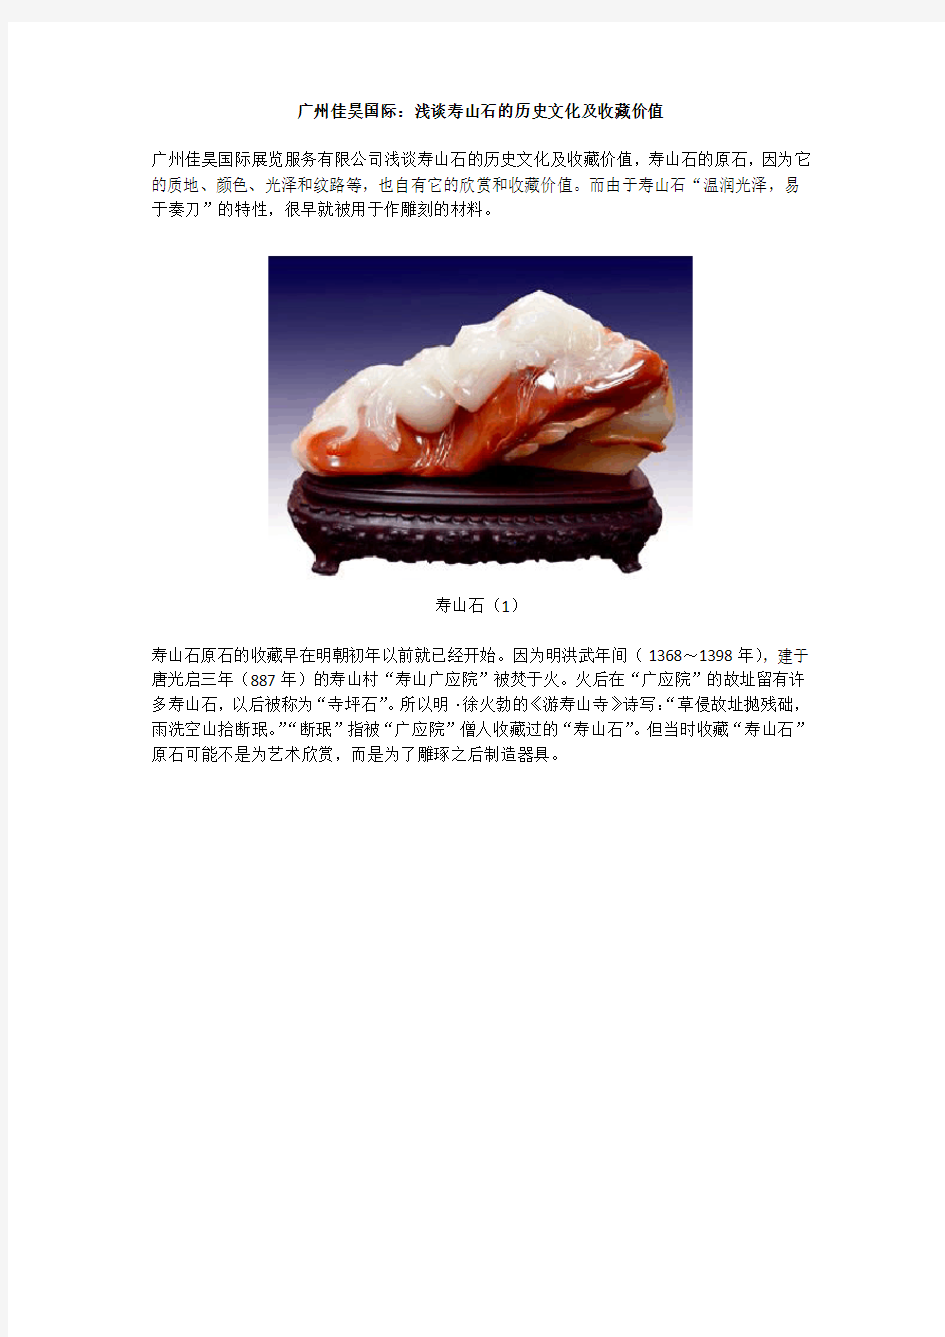 广州佳昊国际：浅谈寿山石的历史文化及收藏价值